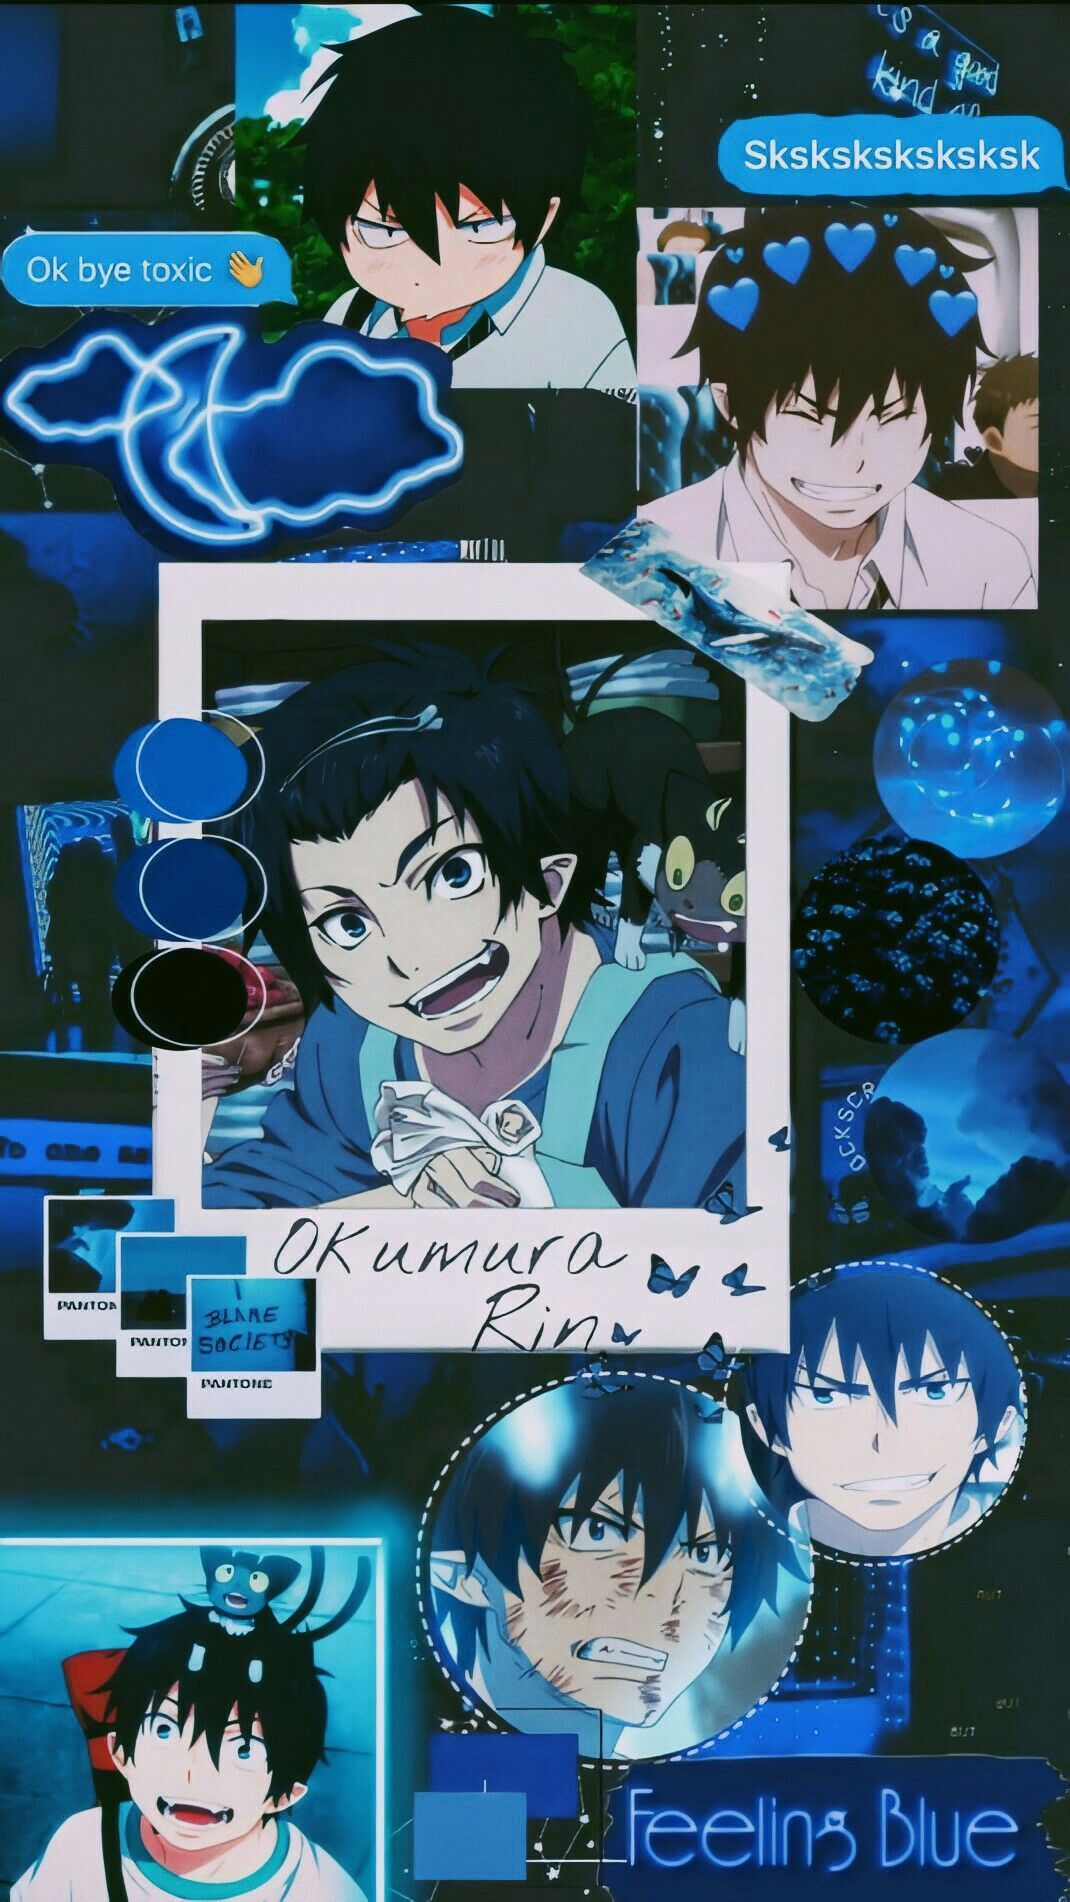 Okumura Rin wallpaper. Blue anime, Blue exorcist rin, Blue exorcist anime